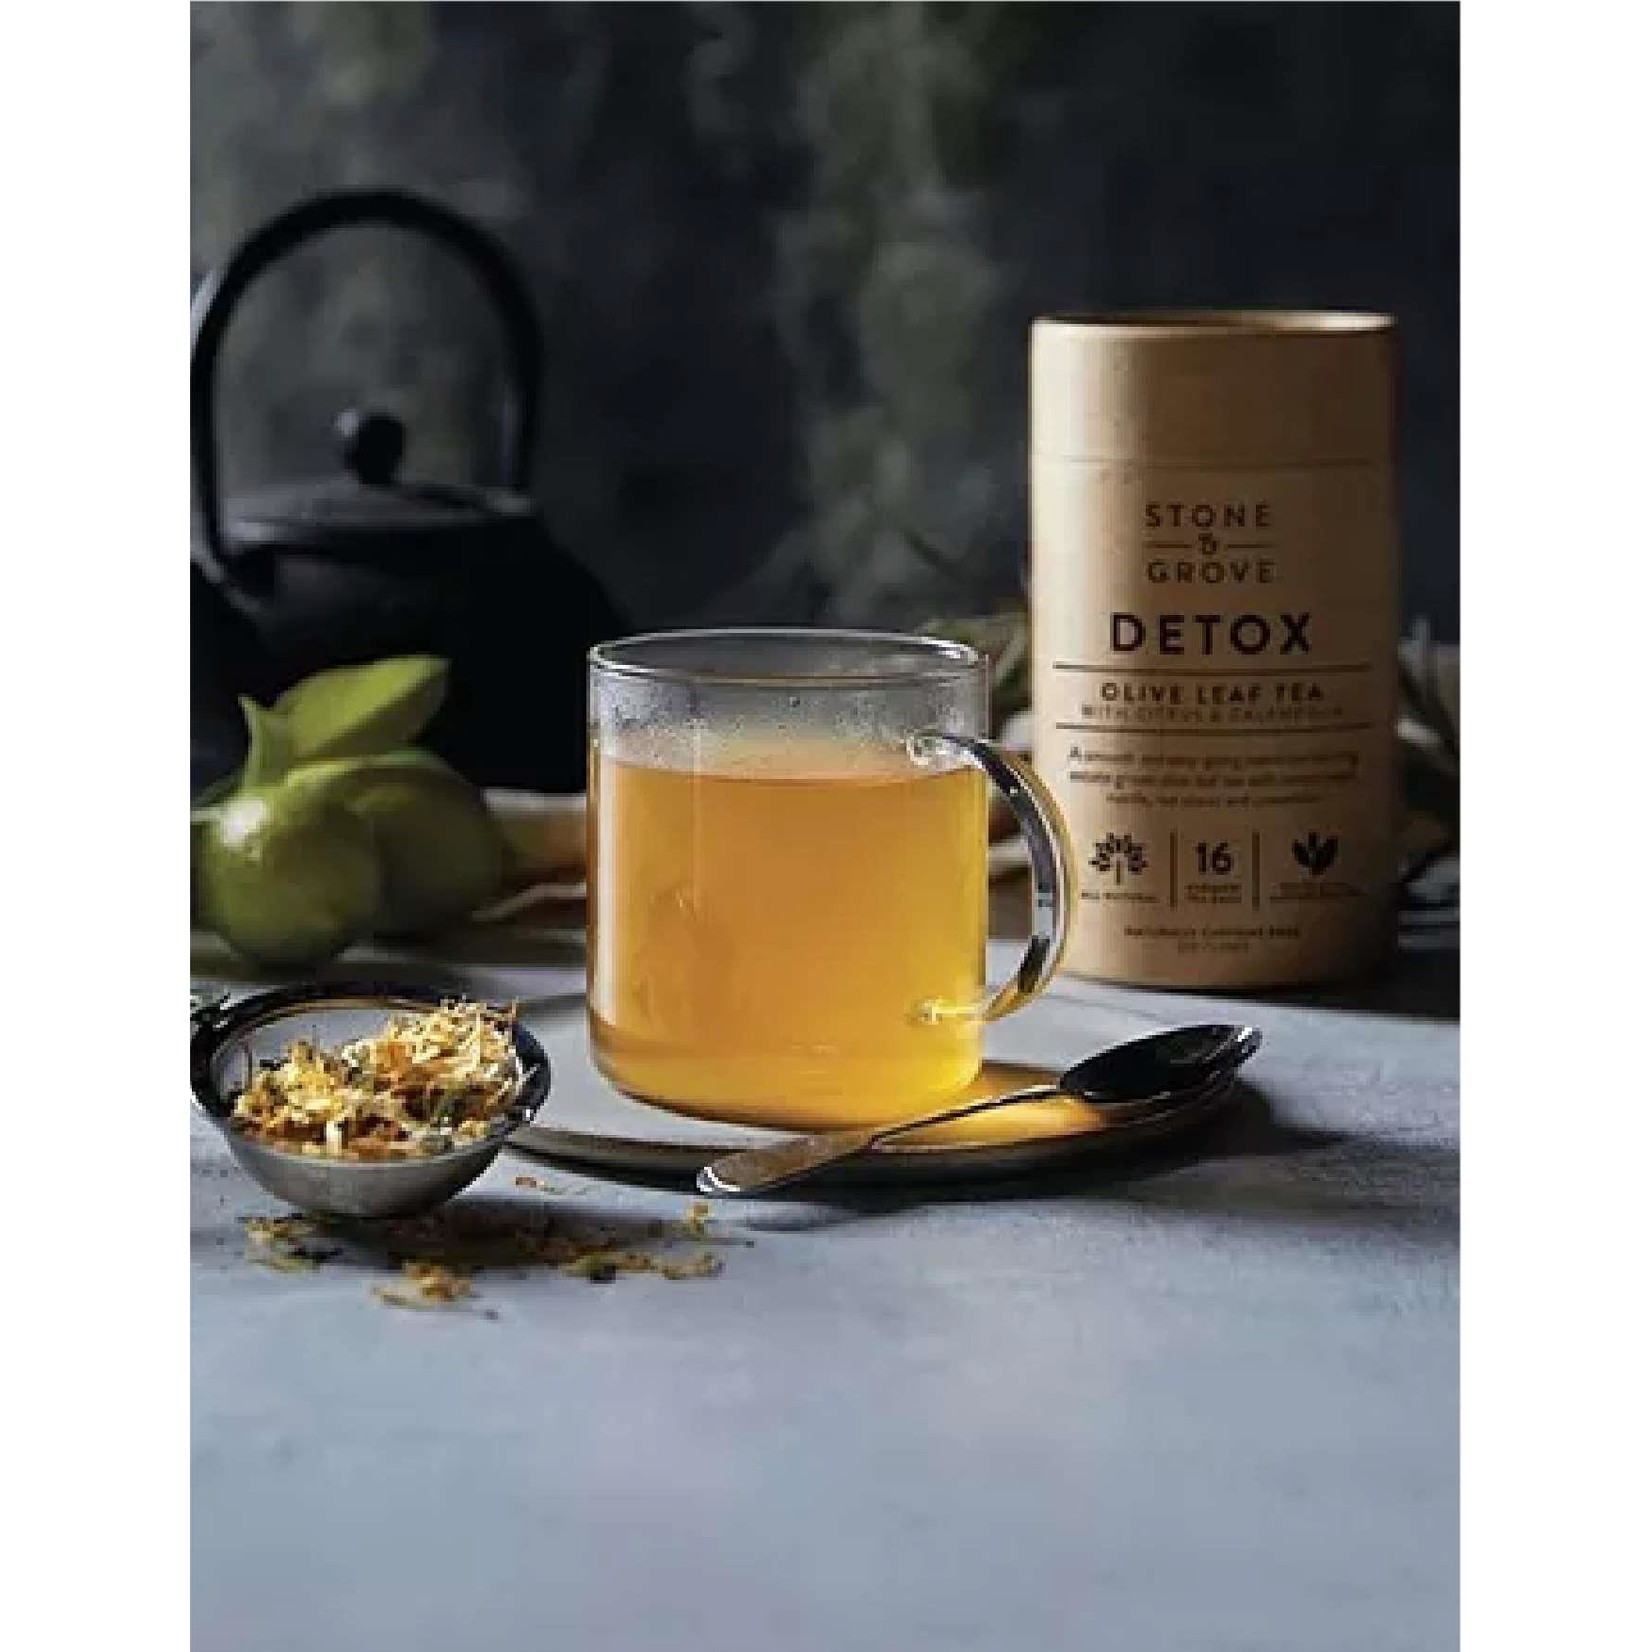 Stone & Grove TEA Olive Leaf Detox Blend